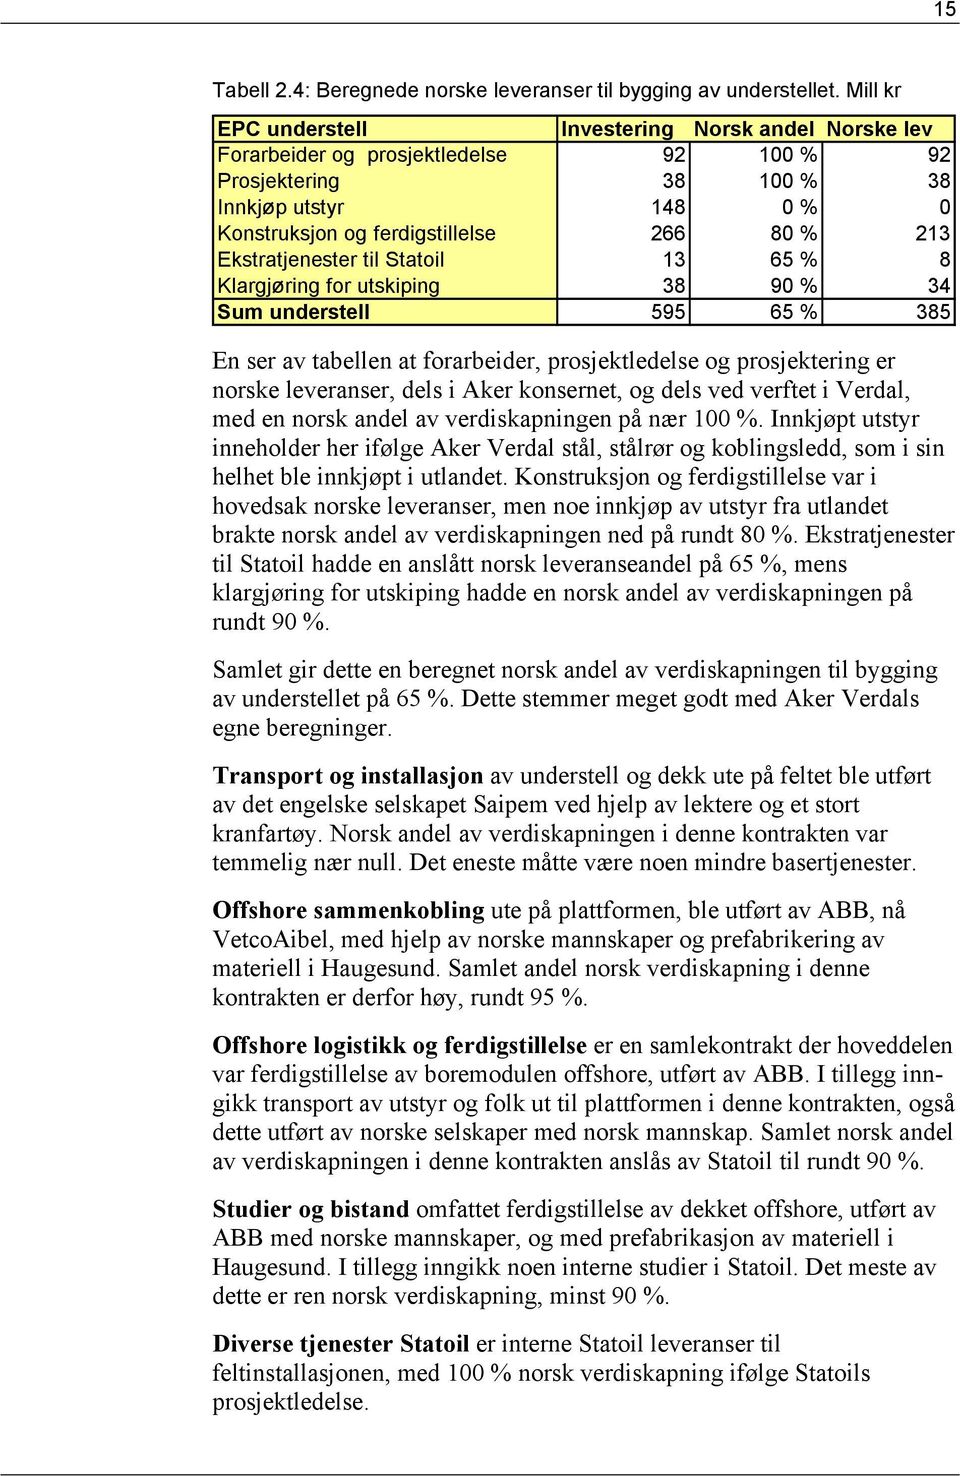 Ekstratjenester til Statoil 13 65 % 8 Klargjøring for utskiping 38 90 % 34 Sum understell 595 65 % 385 En ser av tabellen at forarbeider, prosjektledelse og prosjektering er norske leveranser, dels i